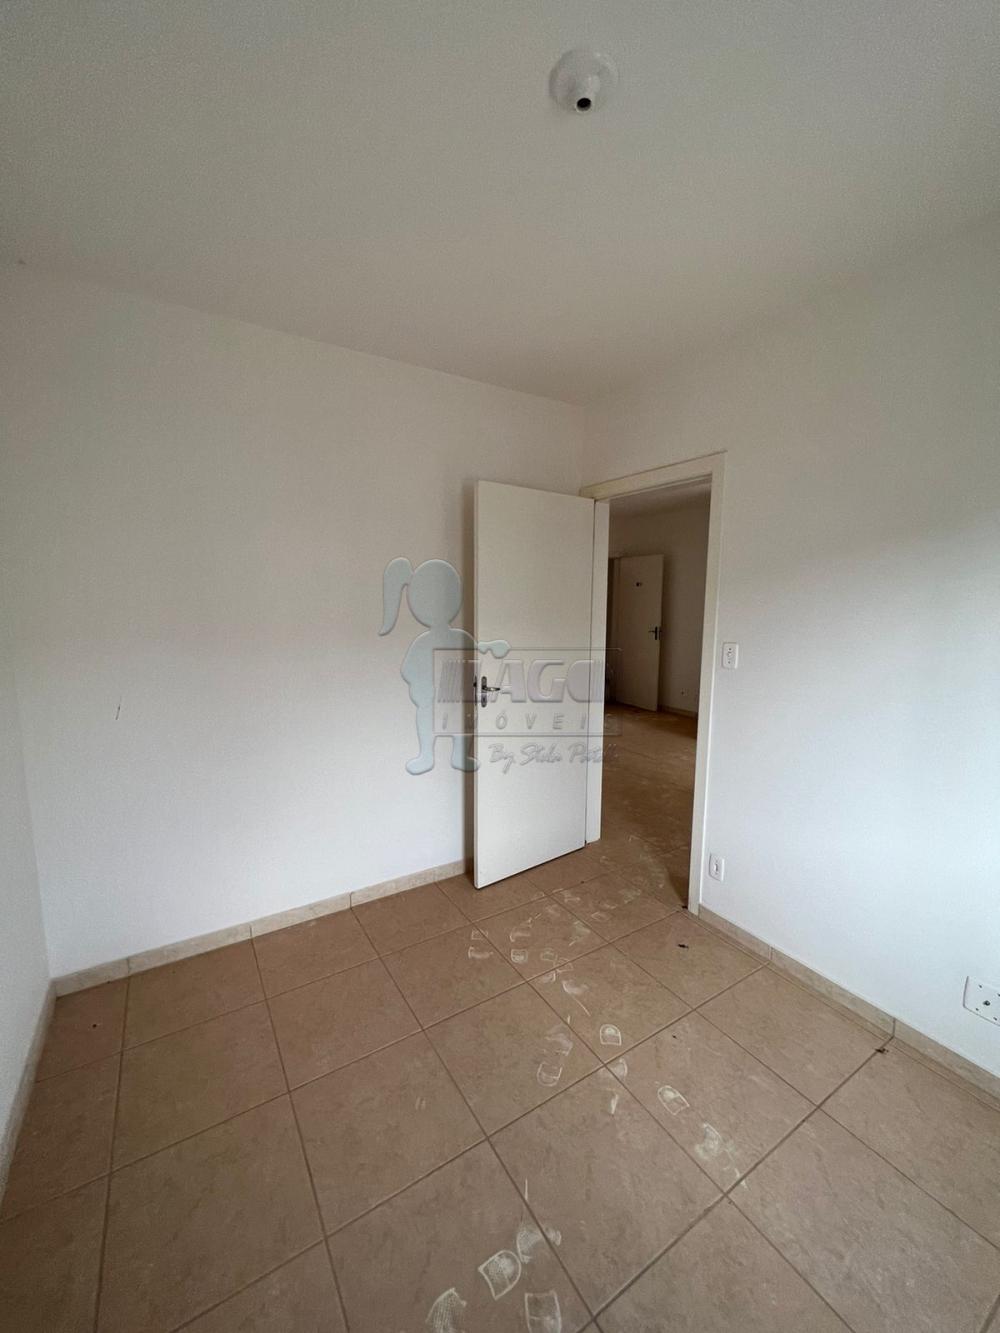 Comprar Apartamentos / Padrão em Ribeirão Preto R$ 128.000,00 - Foto 4